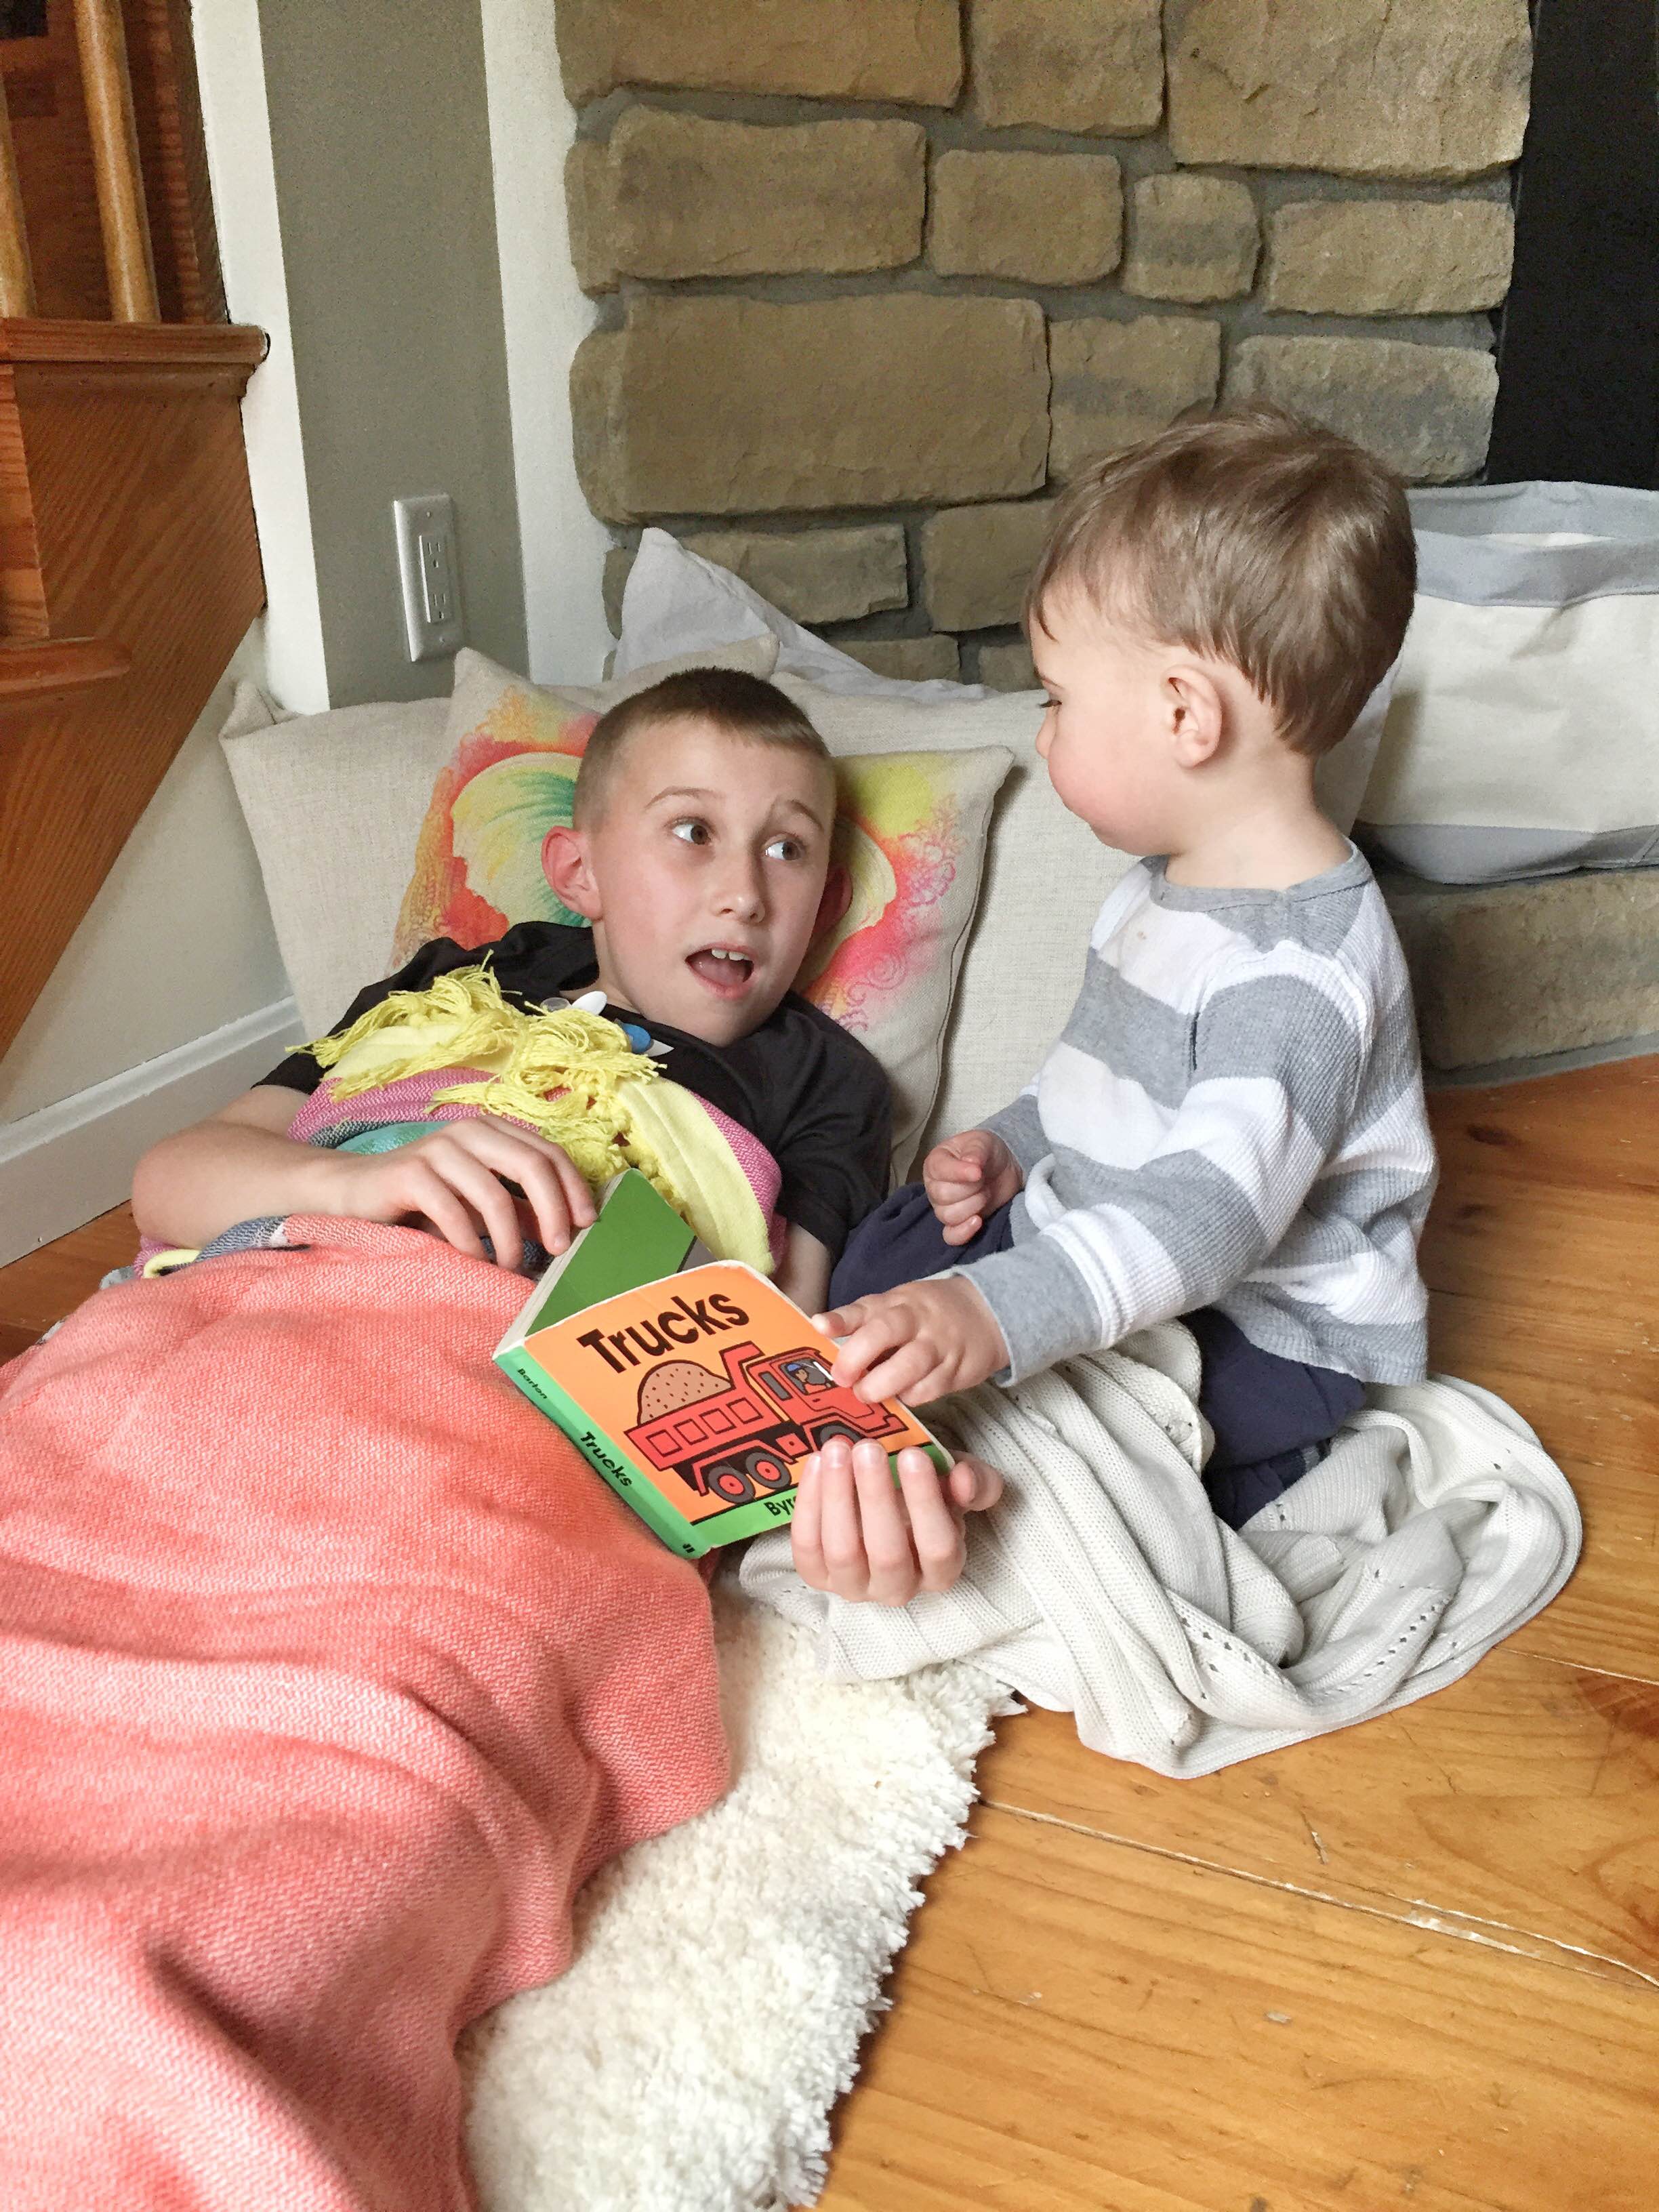 How to create a portable book nook | Kids book corner | How to make a book nook | GinaKirk.com @ginaekirk